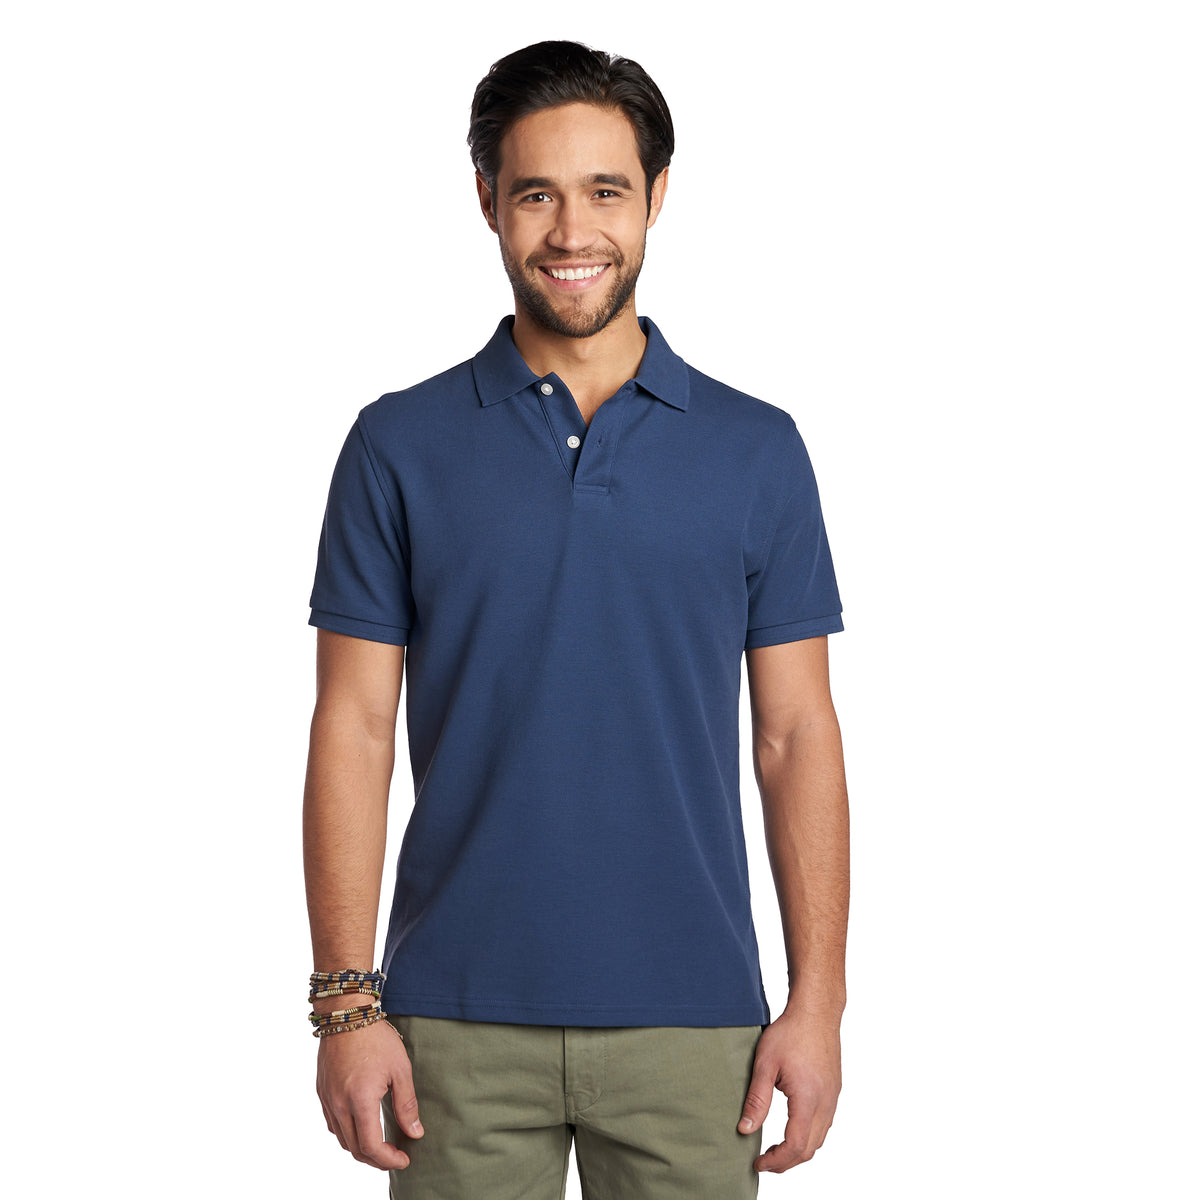 Navy Polo Shirt for Short Men – Peter Manning New York